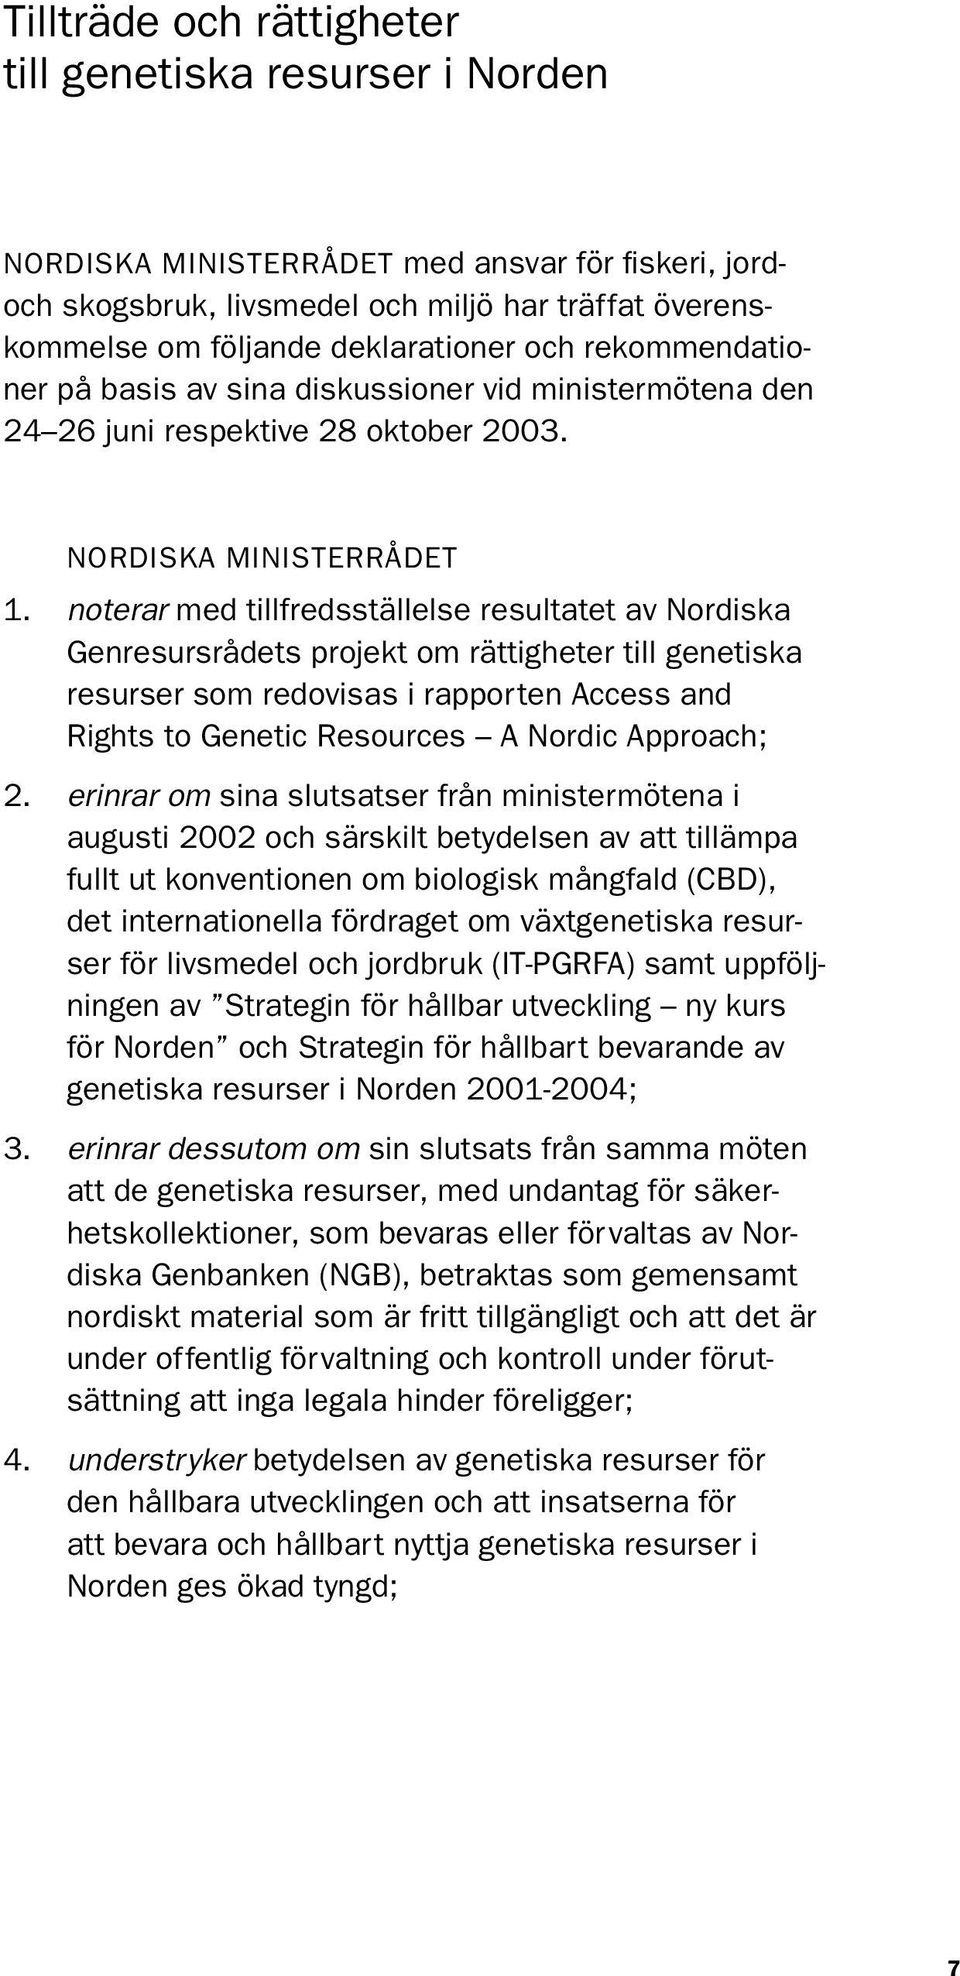 noterar med tillfredsställelse resultatet av Nordiska Genresursrådets projekt om rättigheter till genetiska resurser som redovisas i rapporten Access and Rights to Genetic Resources A Nordic